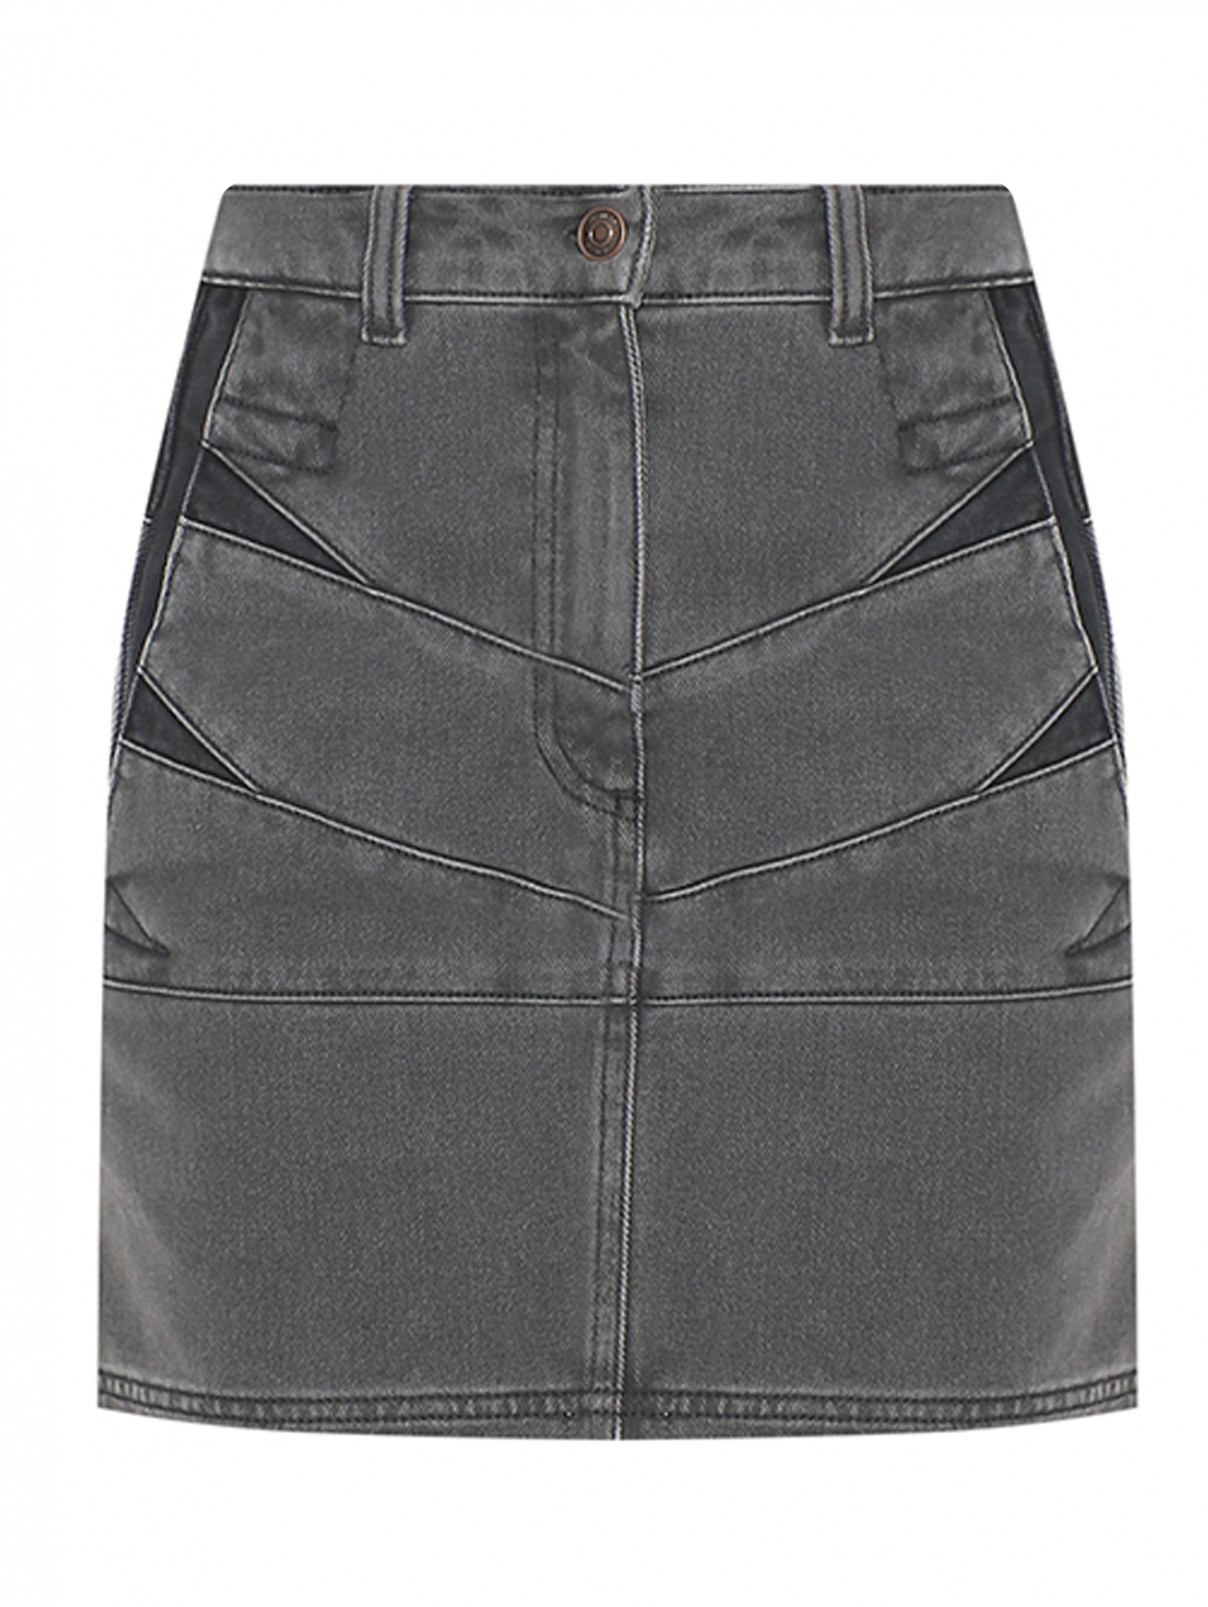 Джинсовая юбка-мини с карманами Kenzo  –  Общий вид  – Цвет:  Серый